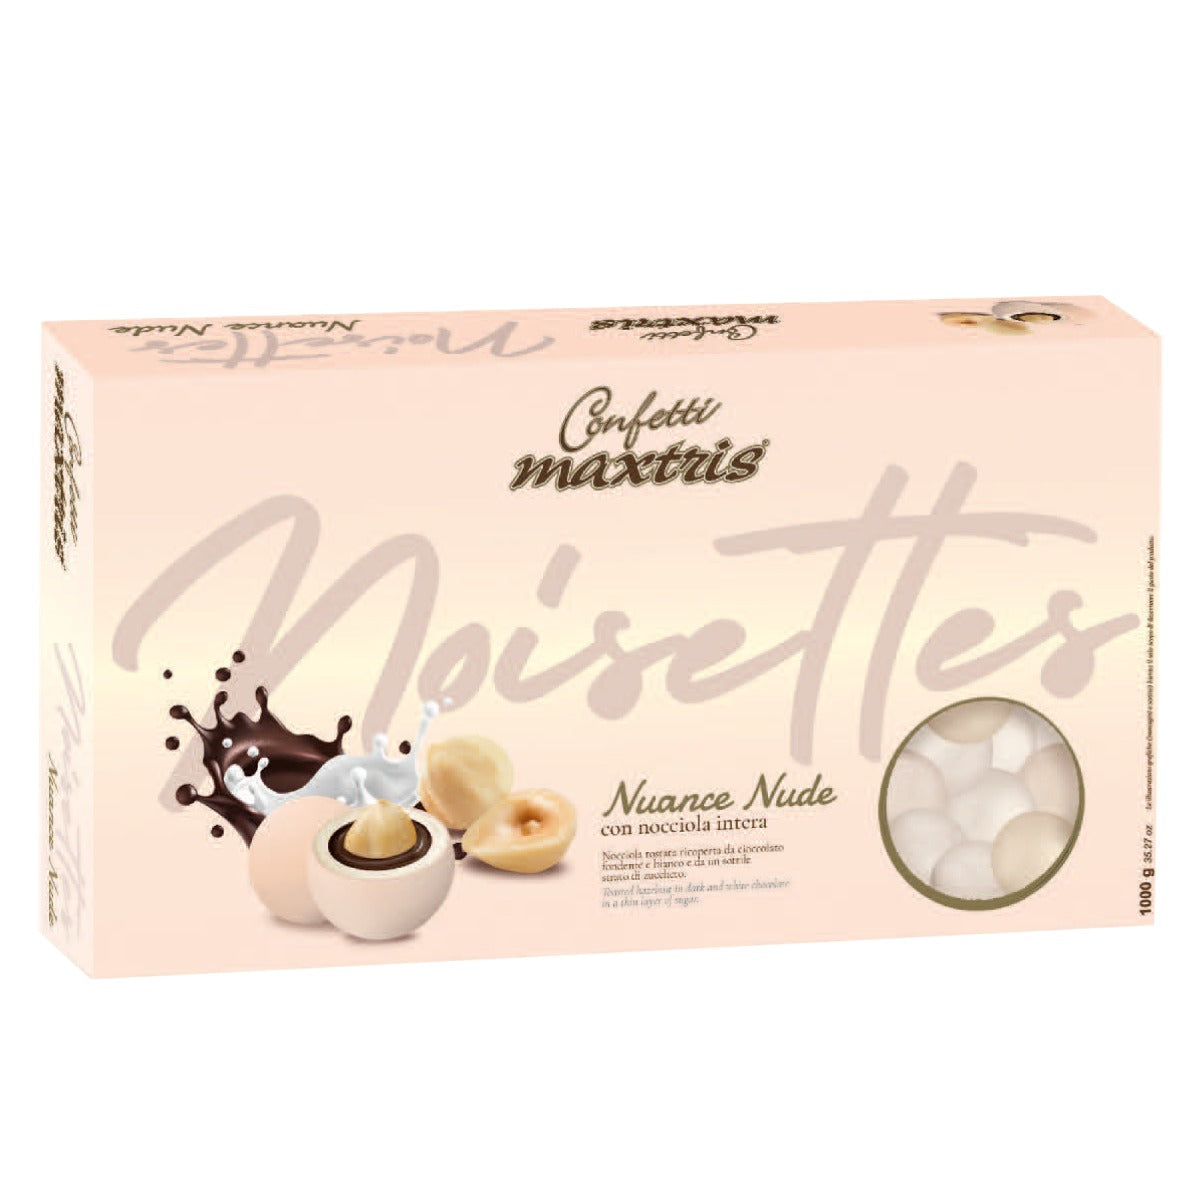 Confetti Maxtris ciocconocciola nuance nude